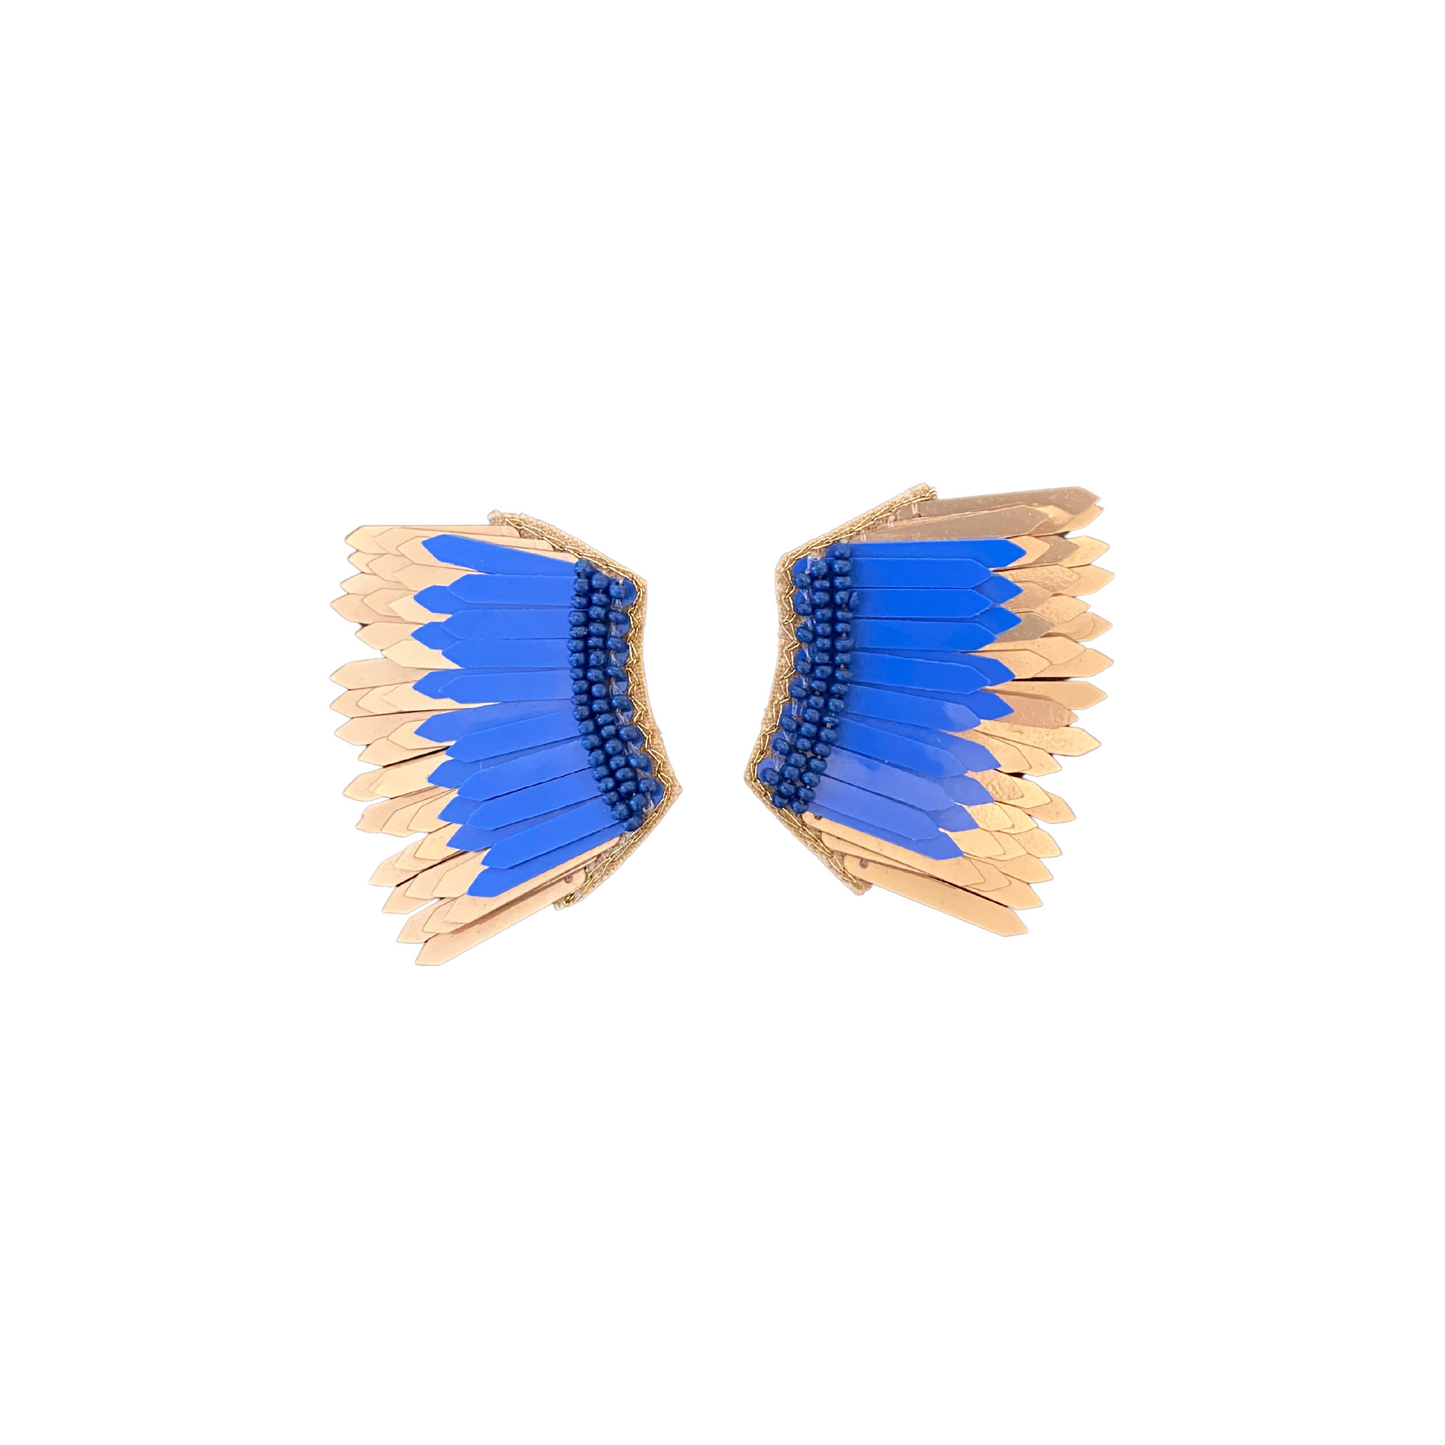 Blue Angel Wing Earrings, Angel Wing Earrings, Wing Earrings, Earrings, Fashion Accessories, Accessories